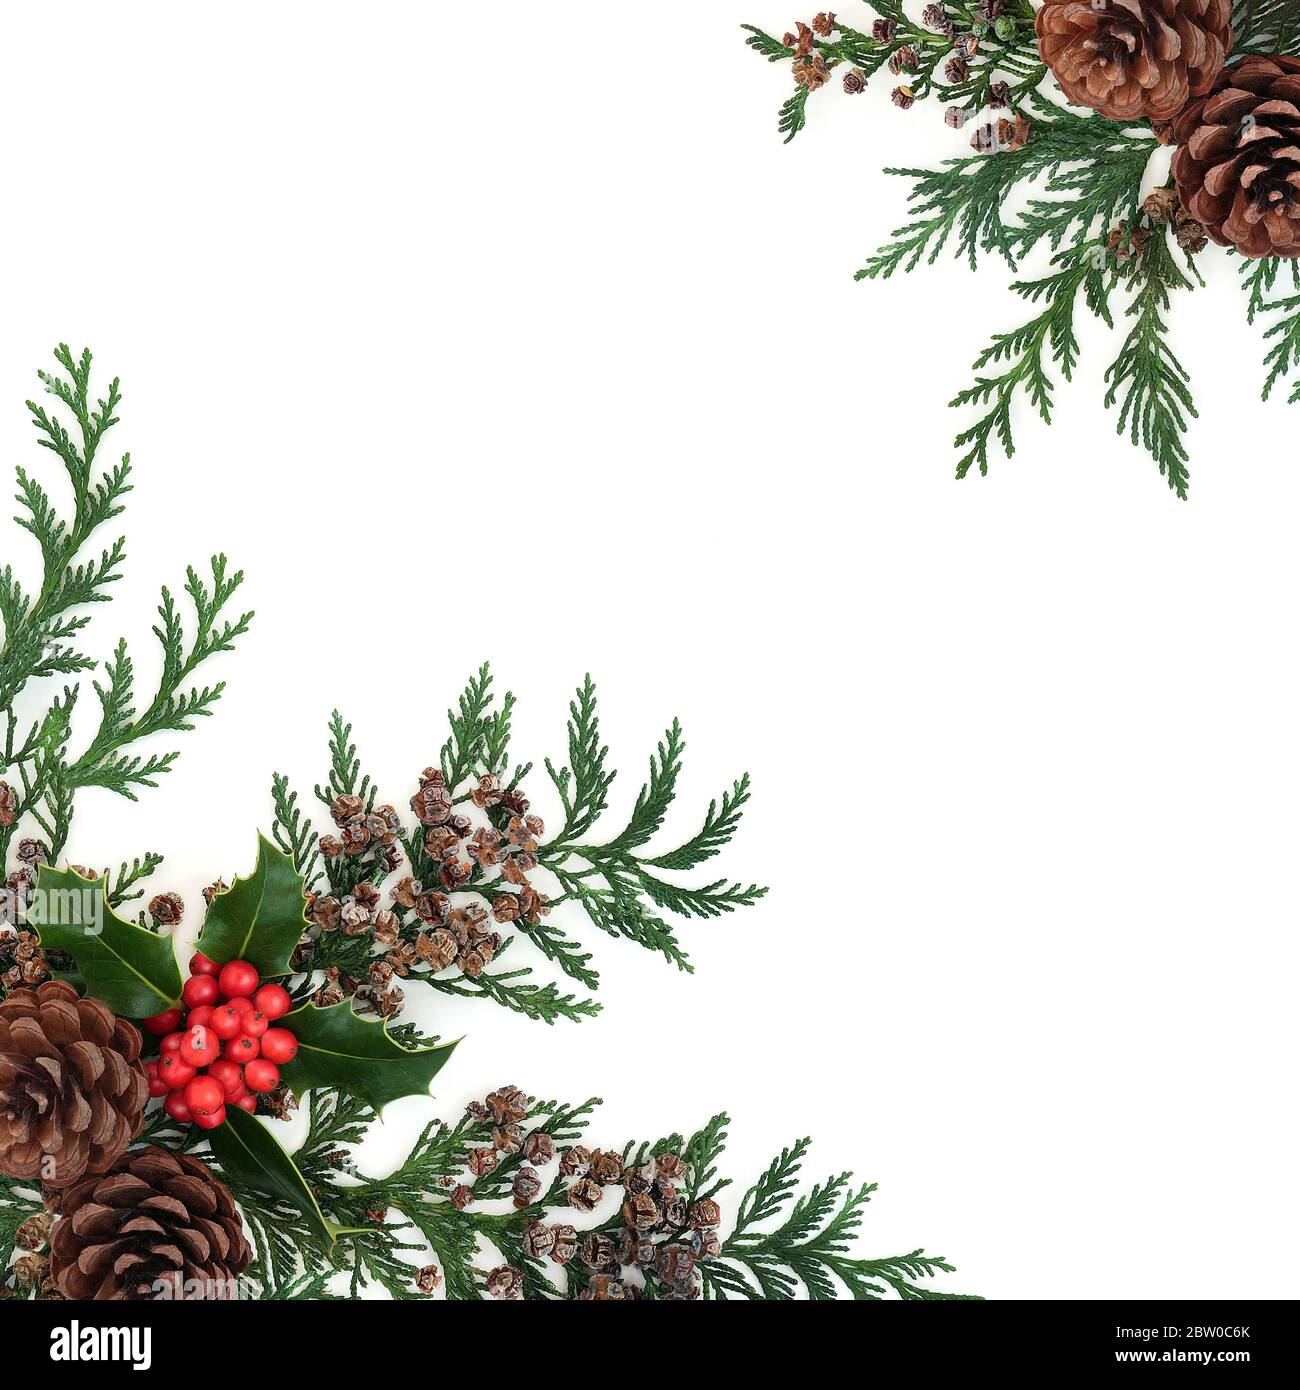 Bordure florale d'hiver naturelle avec houx, cyprès de cèdre et cônes de pin sur fond blanc. Verdure traditionnelle pour Noël et nouvel an. Banque D'Images